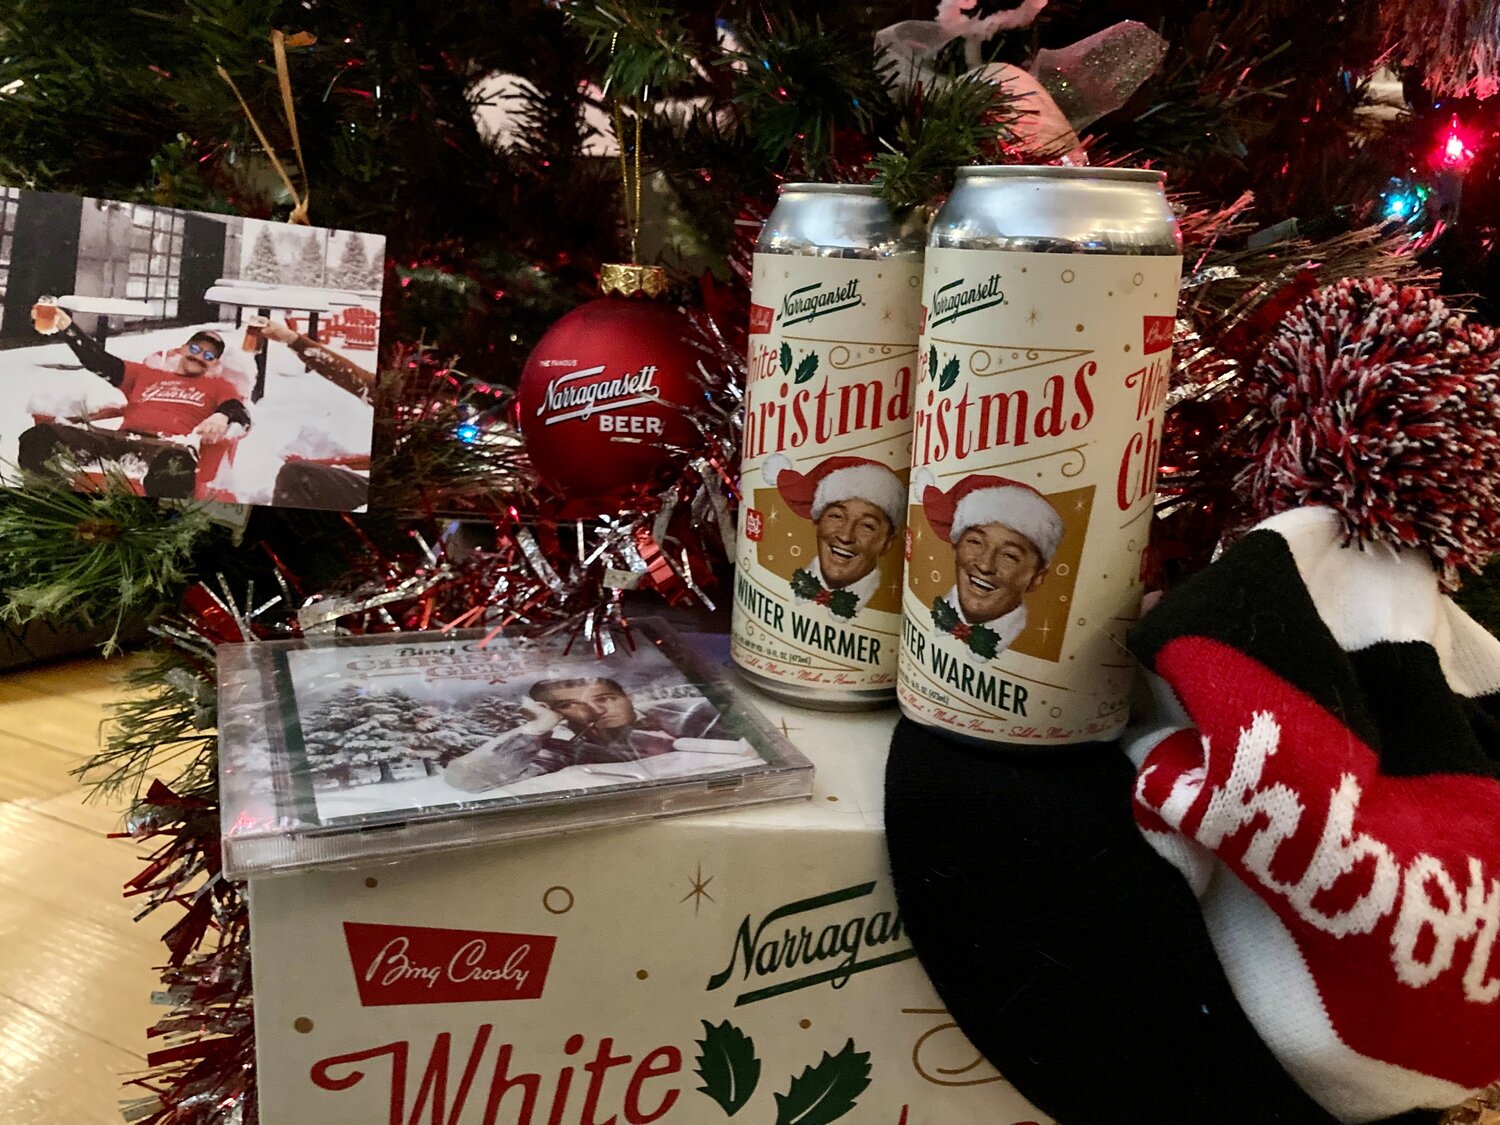 Narragansett Beer's White Christmas Winter Warmer and festive merch